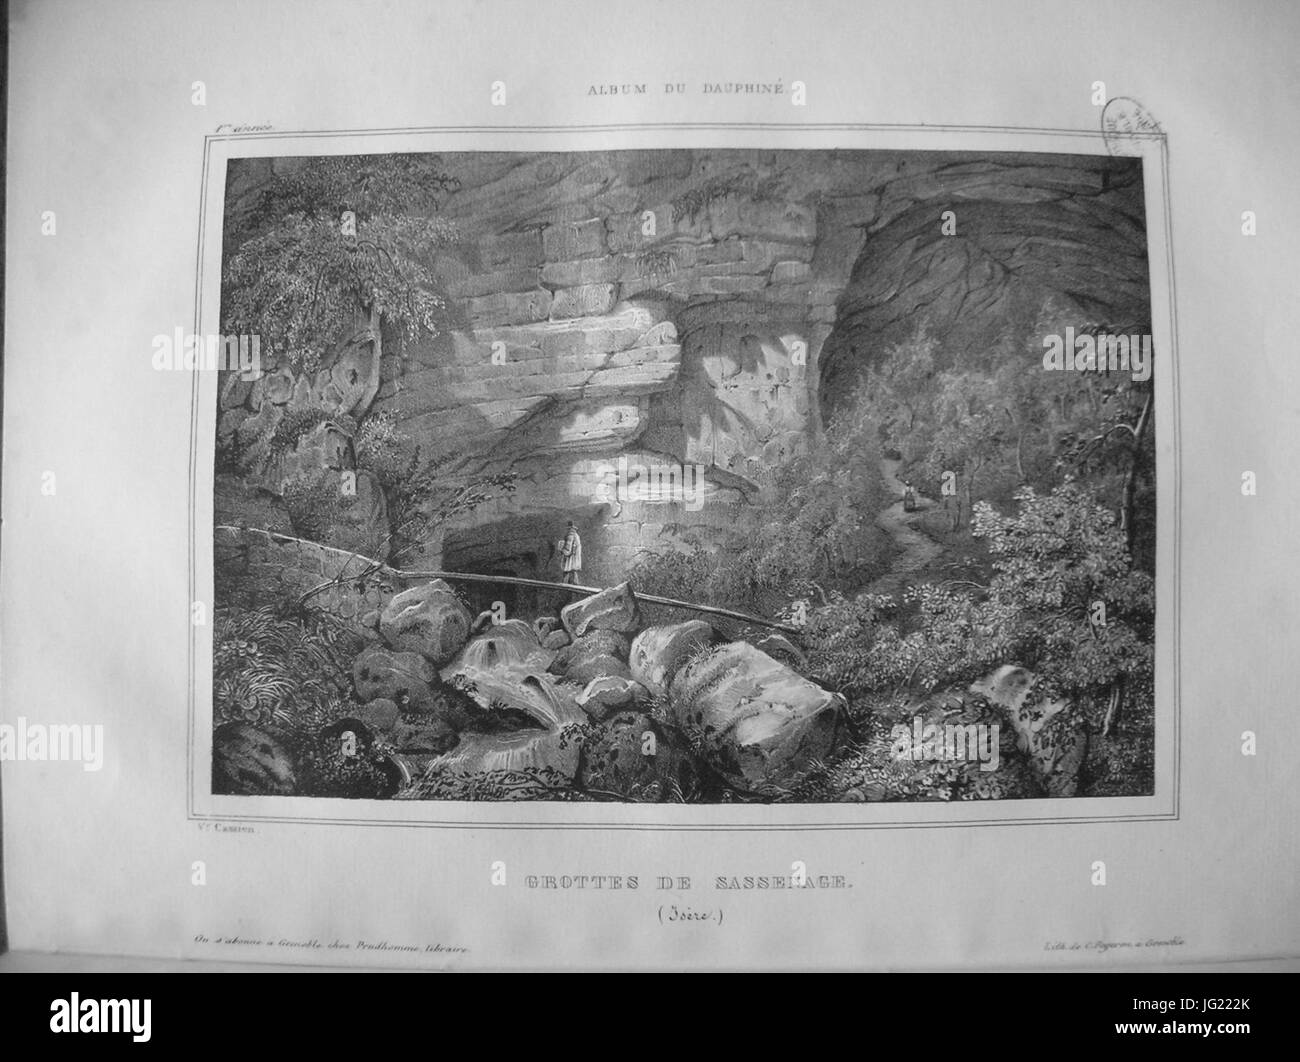 Im07 Album dauphiné T1 Grottes de Sassenage (Isère), by VC versio II Stock Photo